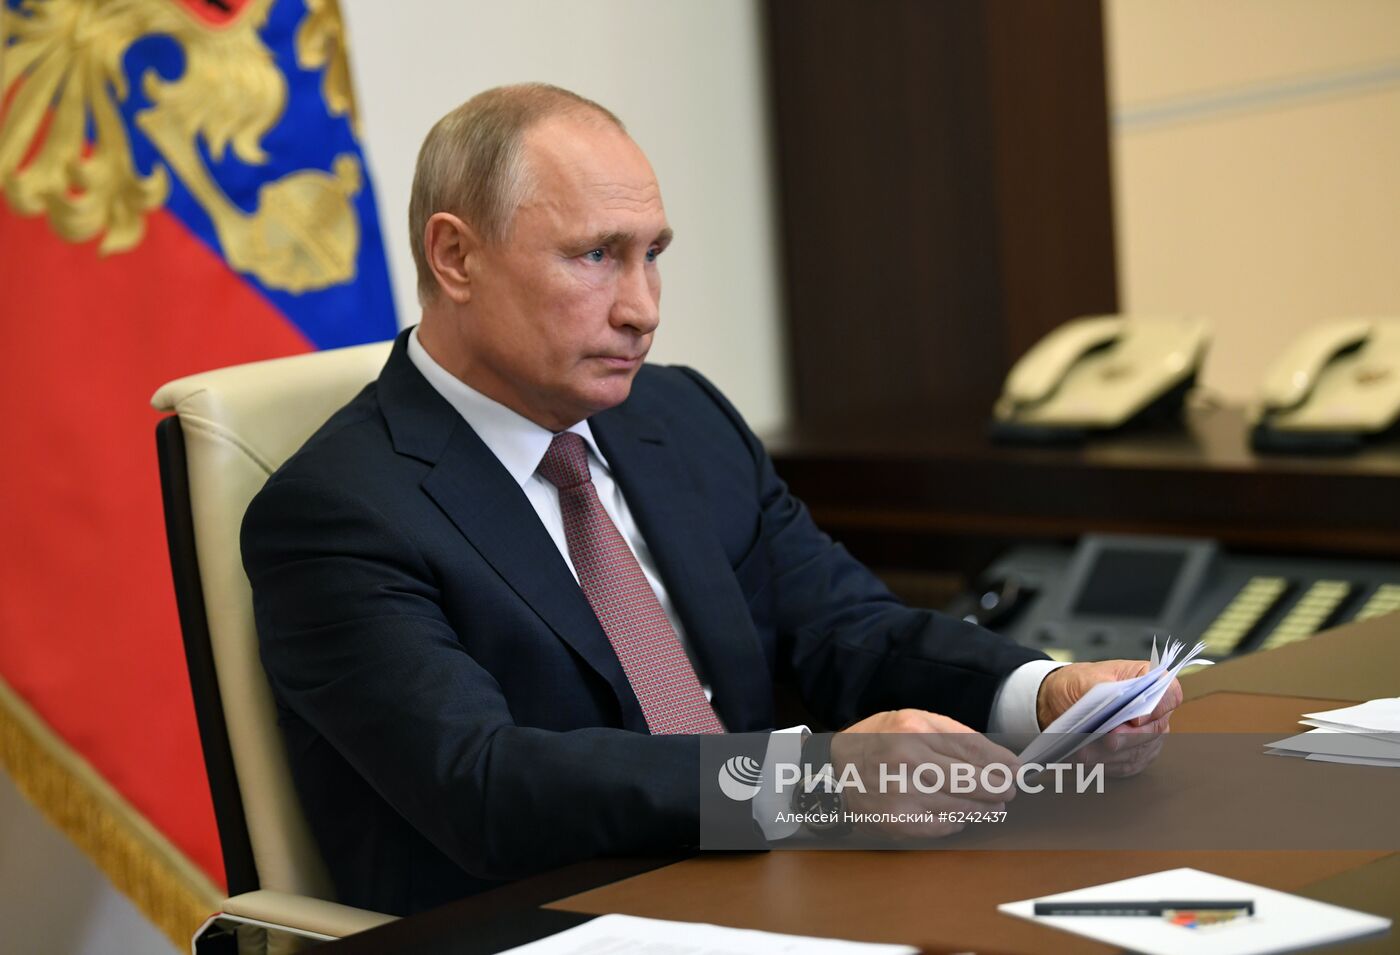 Президент РФ В. Путин провел совещание по открытию медцентров Минобороны в субъектах РФ для больных с COVID-19